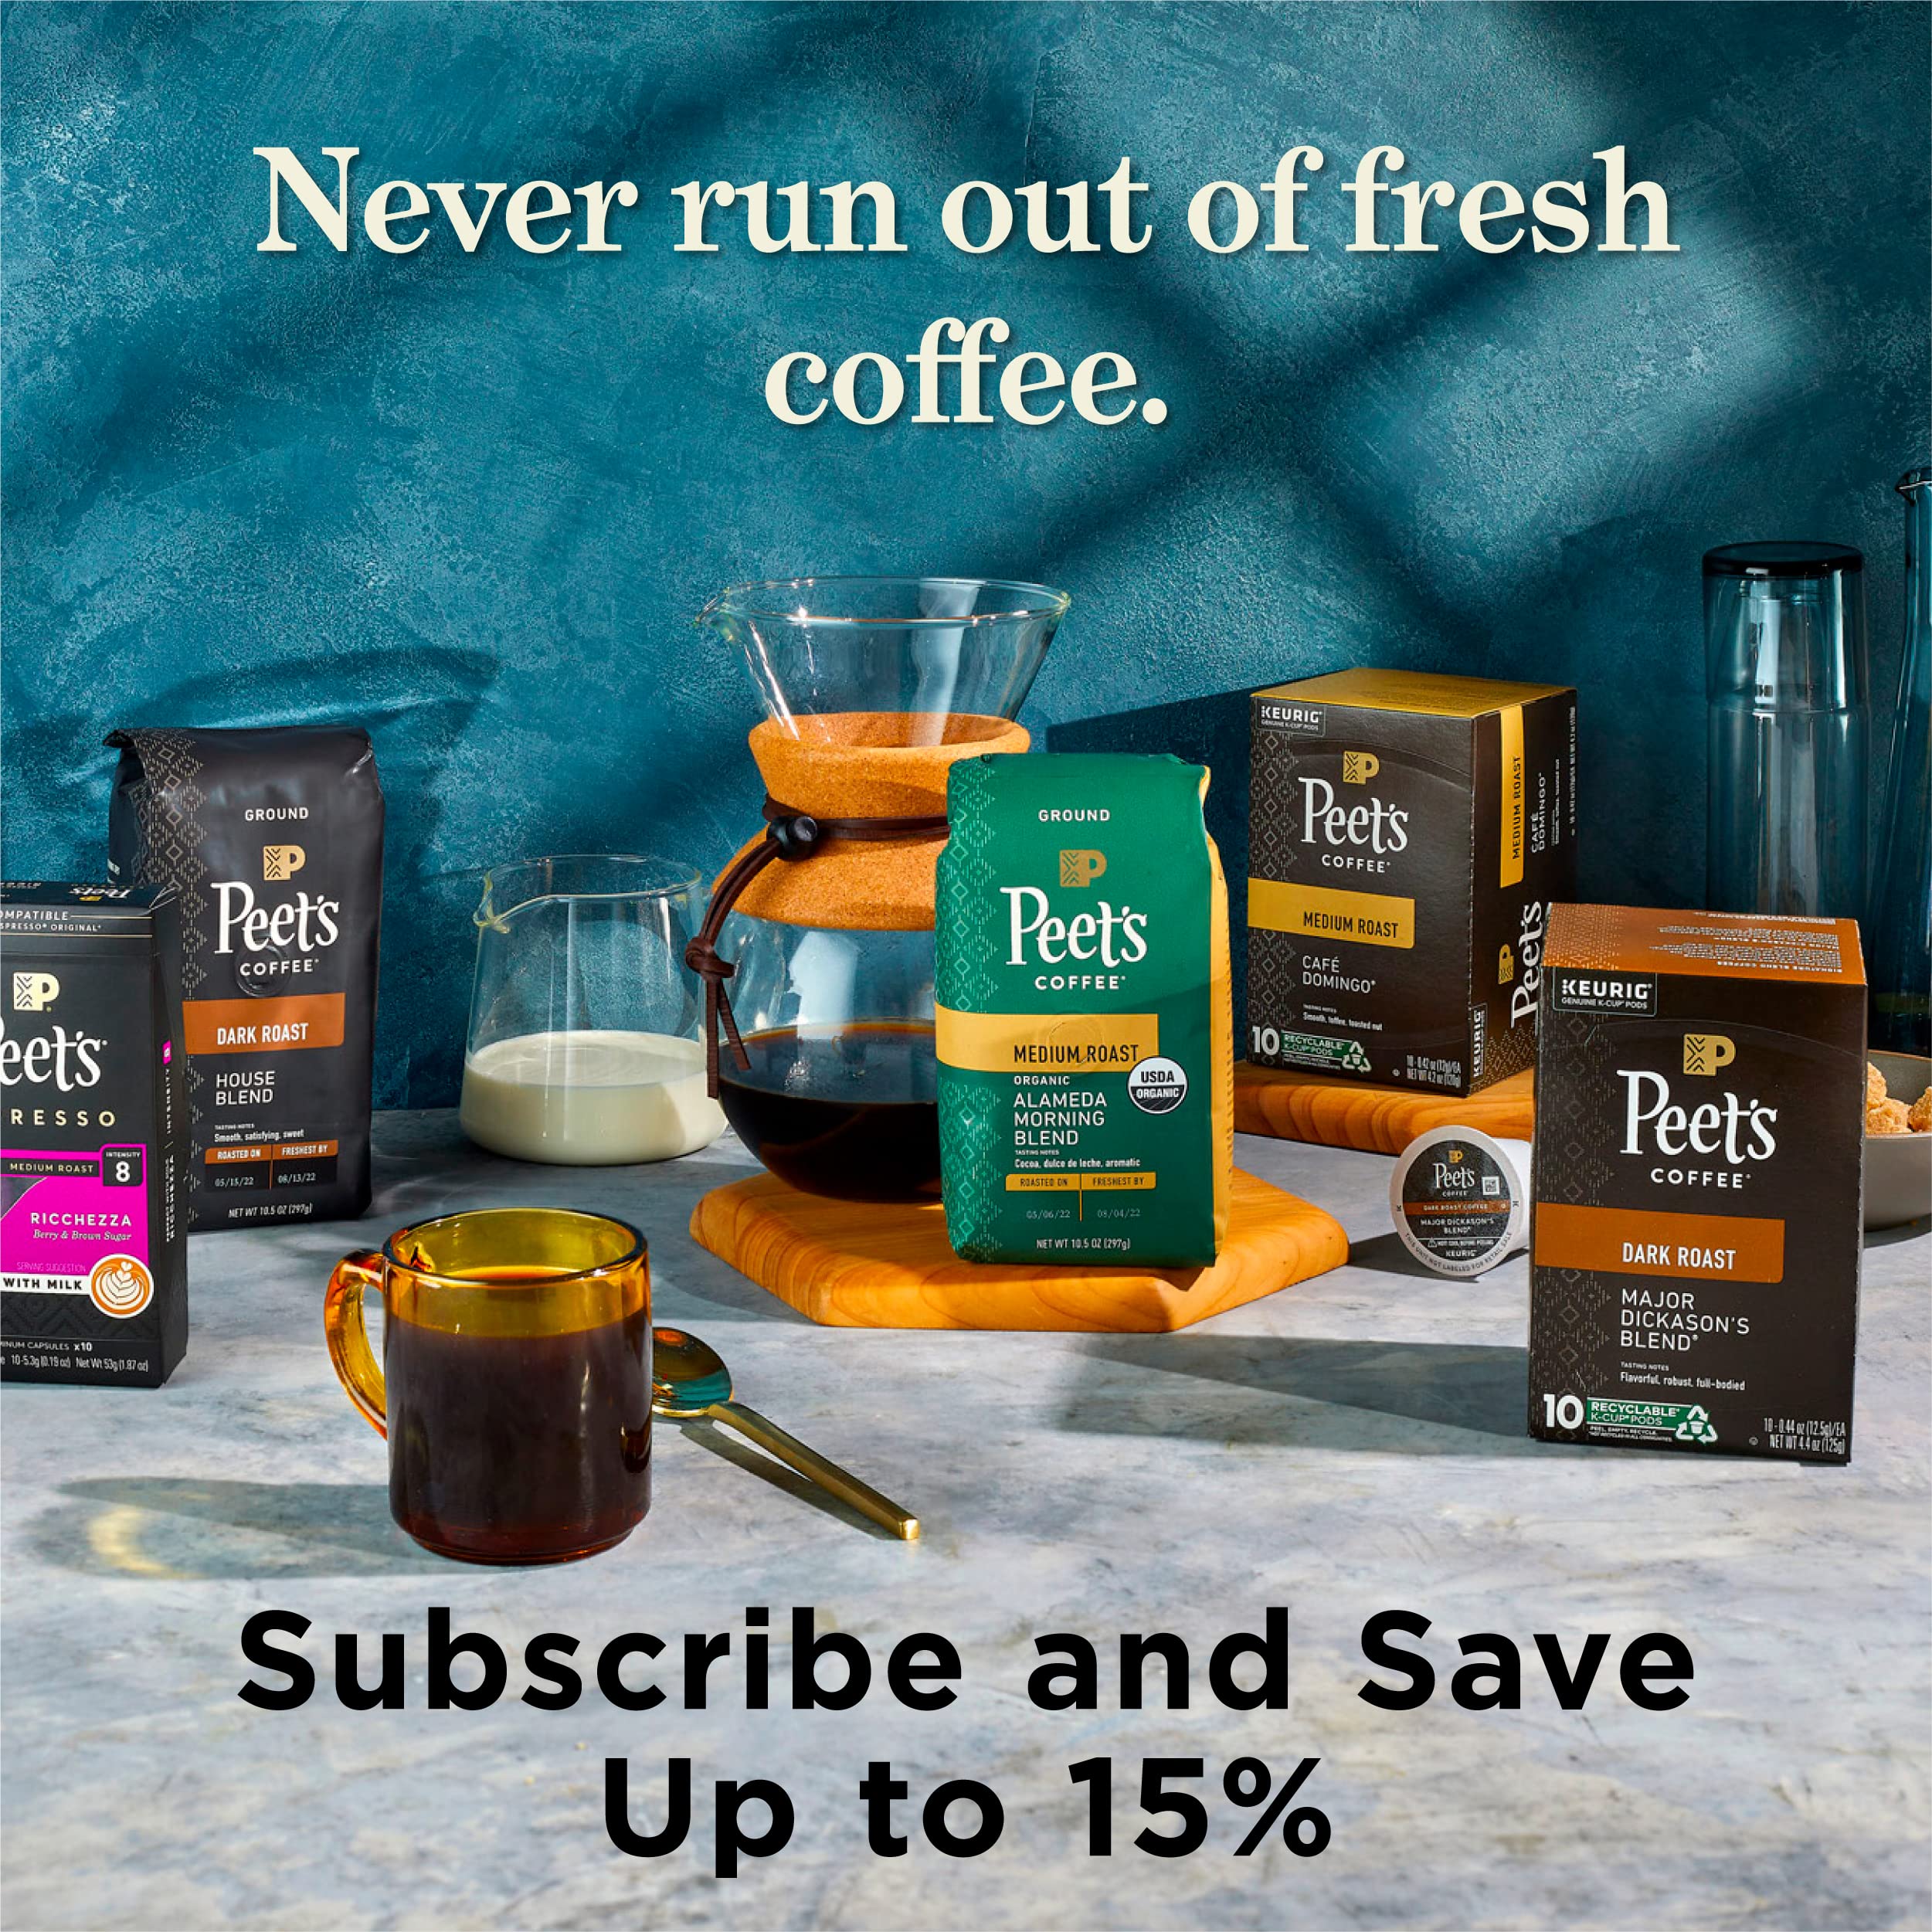 Peet\'s Coffee: Vị trào lưu cà phê đang ngày càng trở nên phổ biến, và Peet\'s Coffee là một trong những thương hiệu cà phê nổi tiếng nhất thế giới. Hãy đến đây để thưởng thức những ly cà phê thơm ngon và đắm say mỗi ngày.